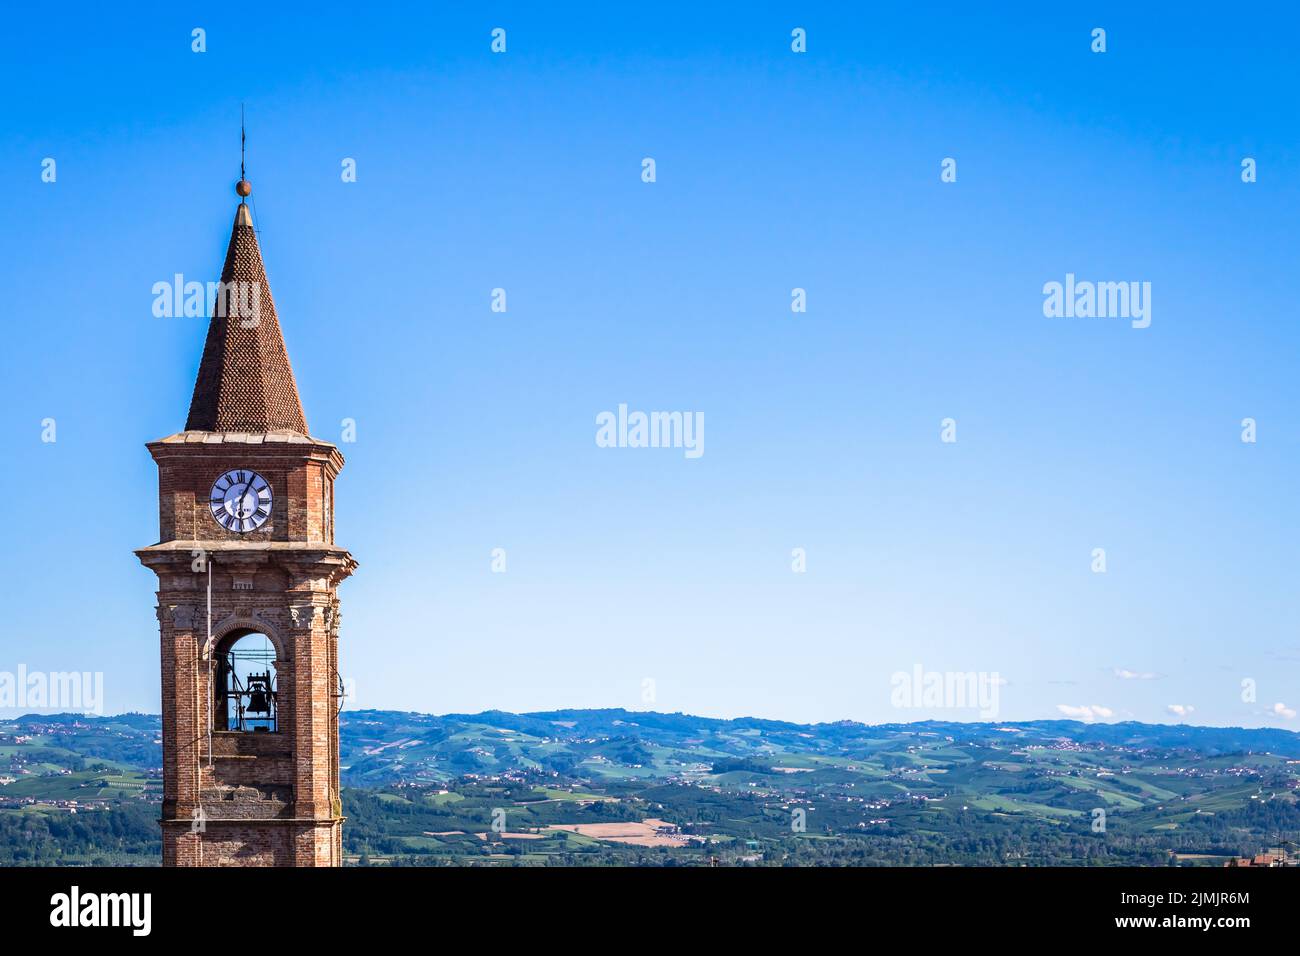 Piemont Hügel in Italien mit landschaftlich reizvoller Landschaft, Weinbergfeld und blauem Himmel. Govone Glockenturm auf der linken Seite. Stockfoto